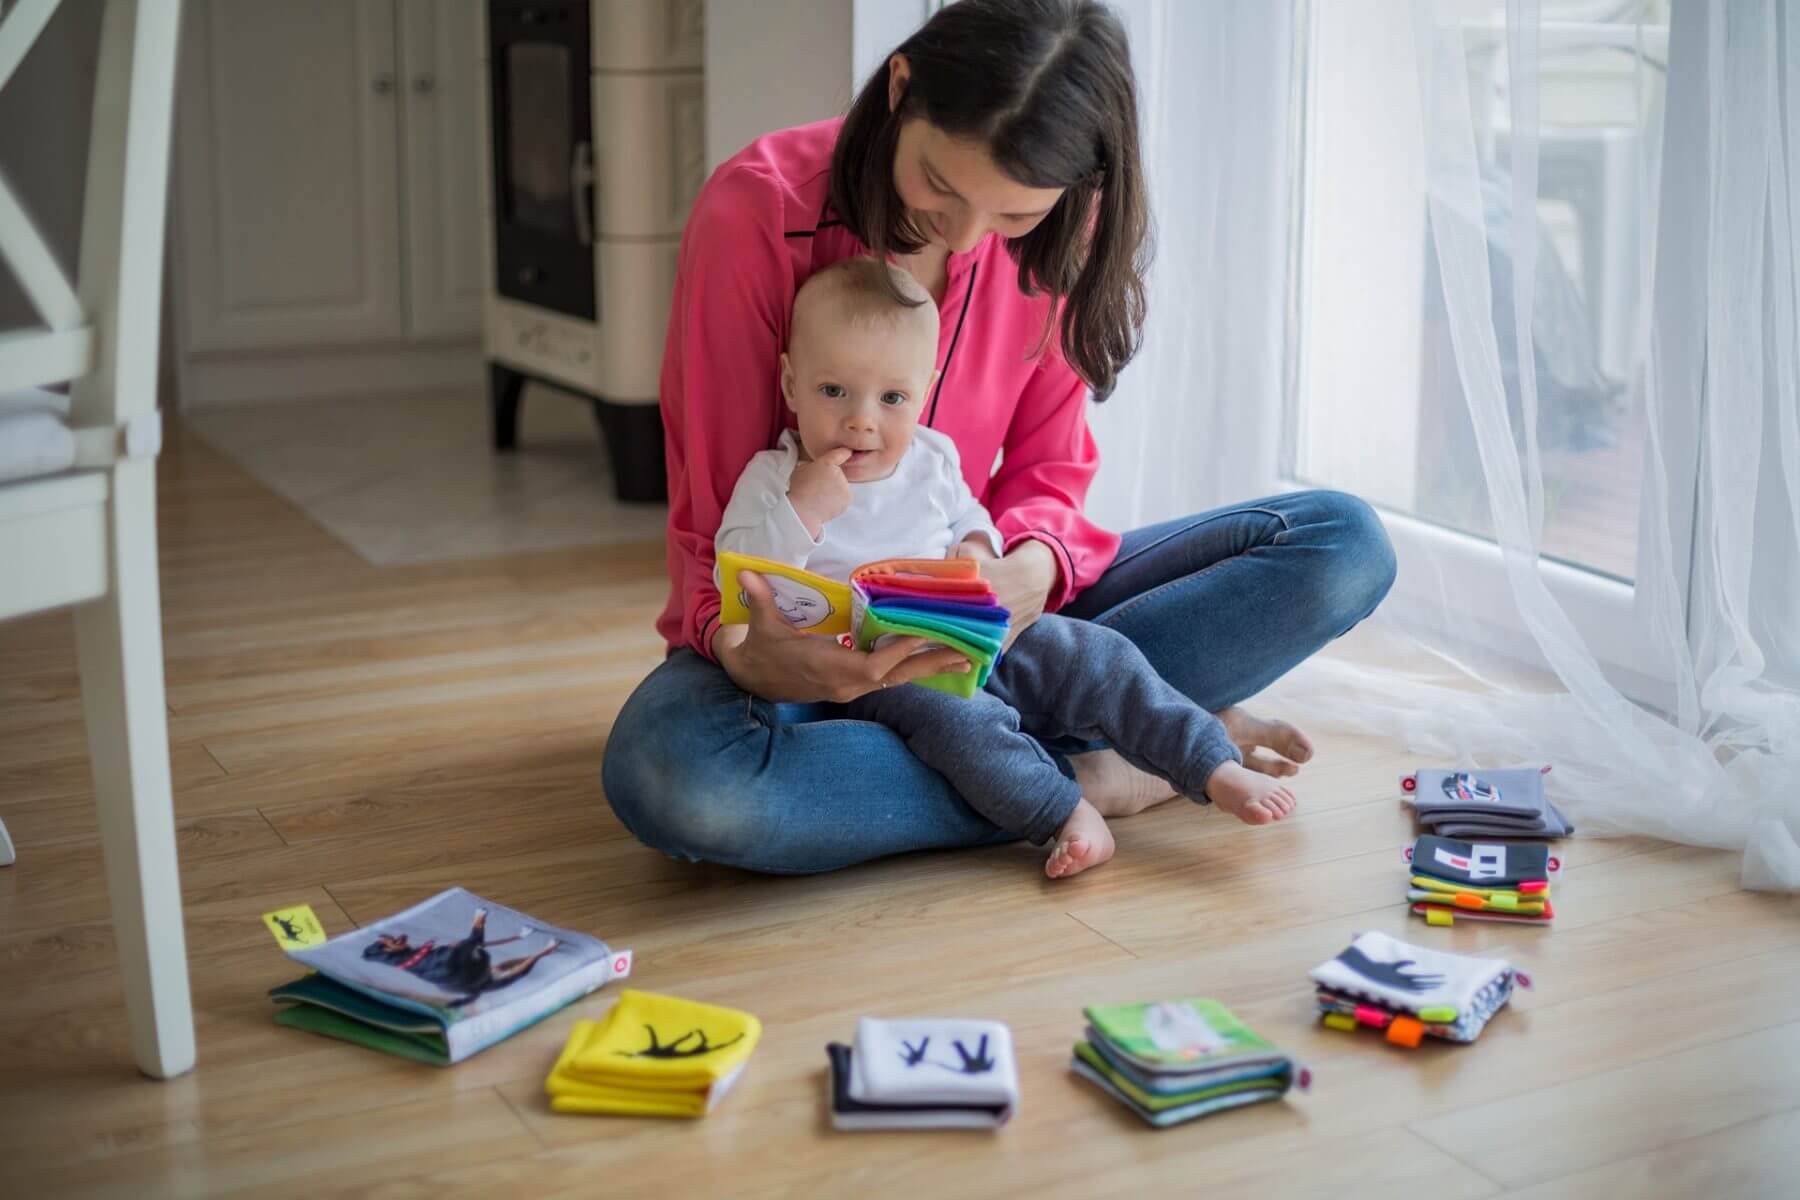 Η ανάγνωση βιβλίων από κοινού με τους γονείς διευκολύνει τη μάθηση στα παιδιά – Απλές συμβουλές